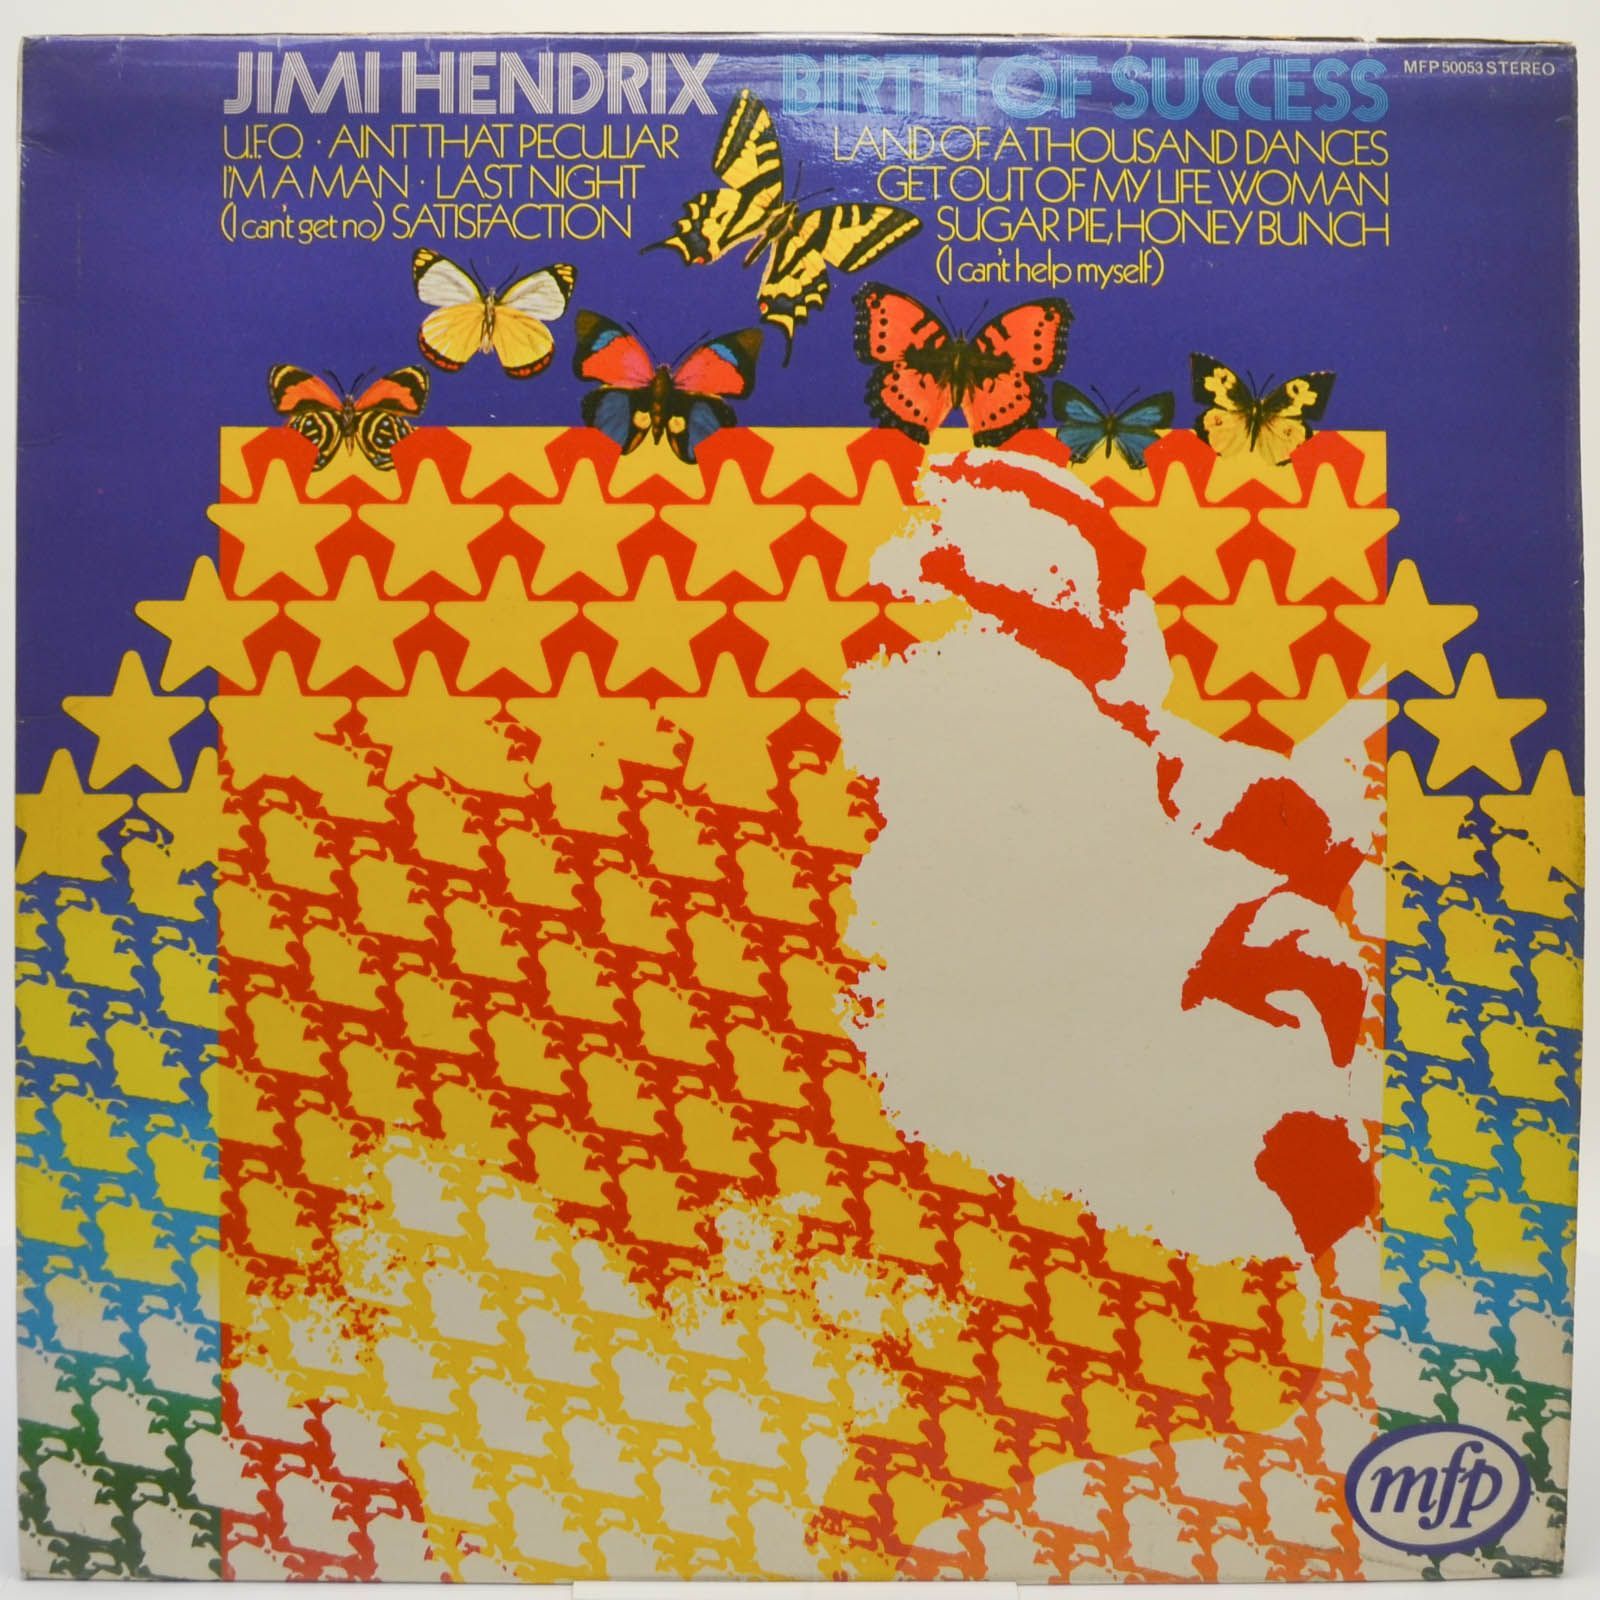 Jimi Hendrix — Birth Of Success, 1973